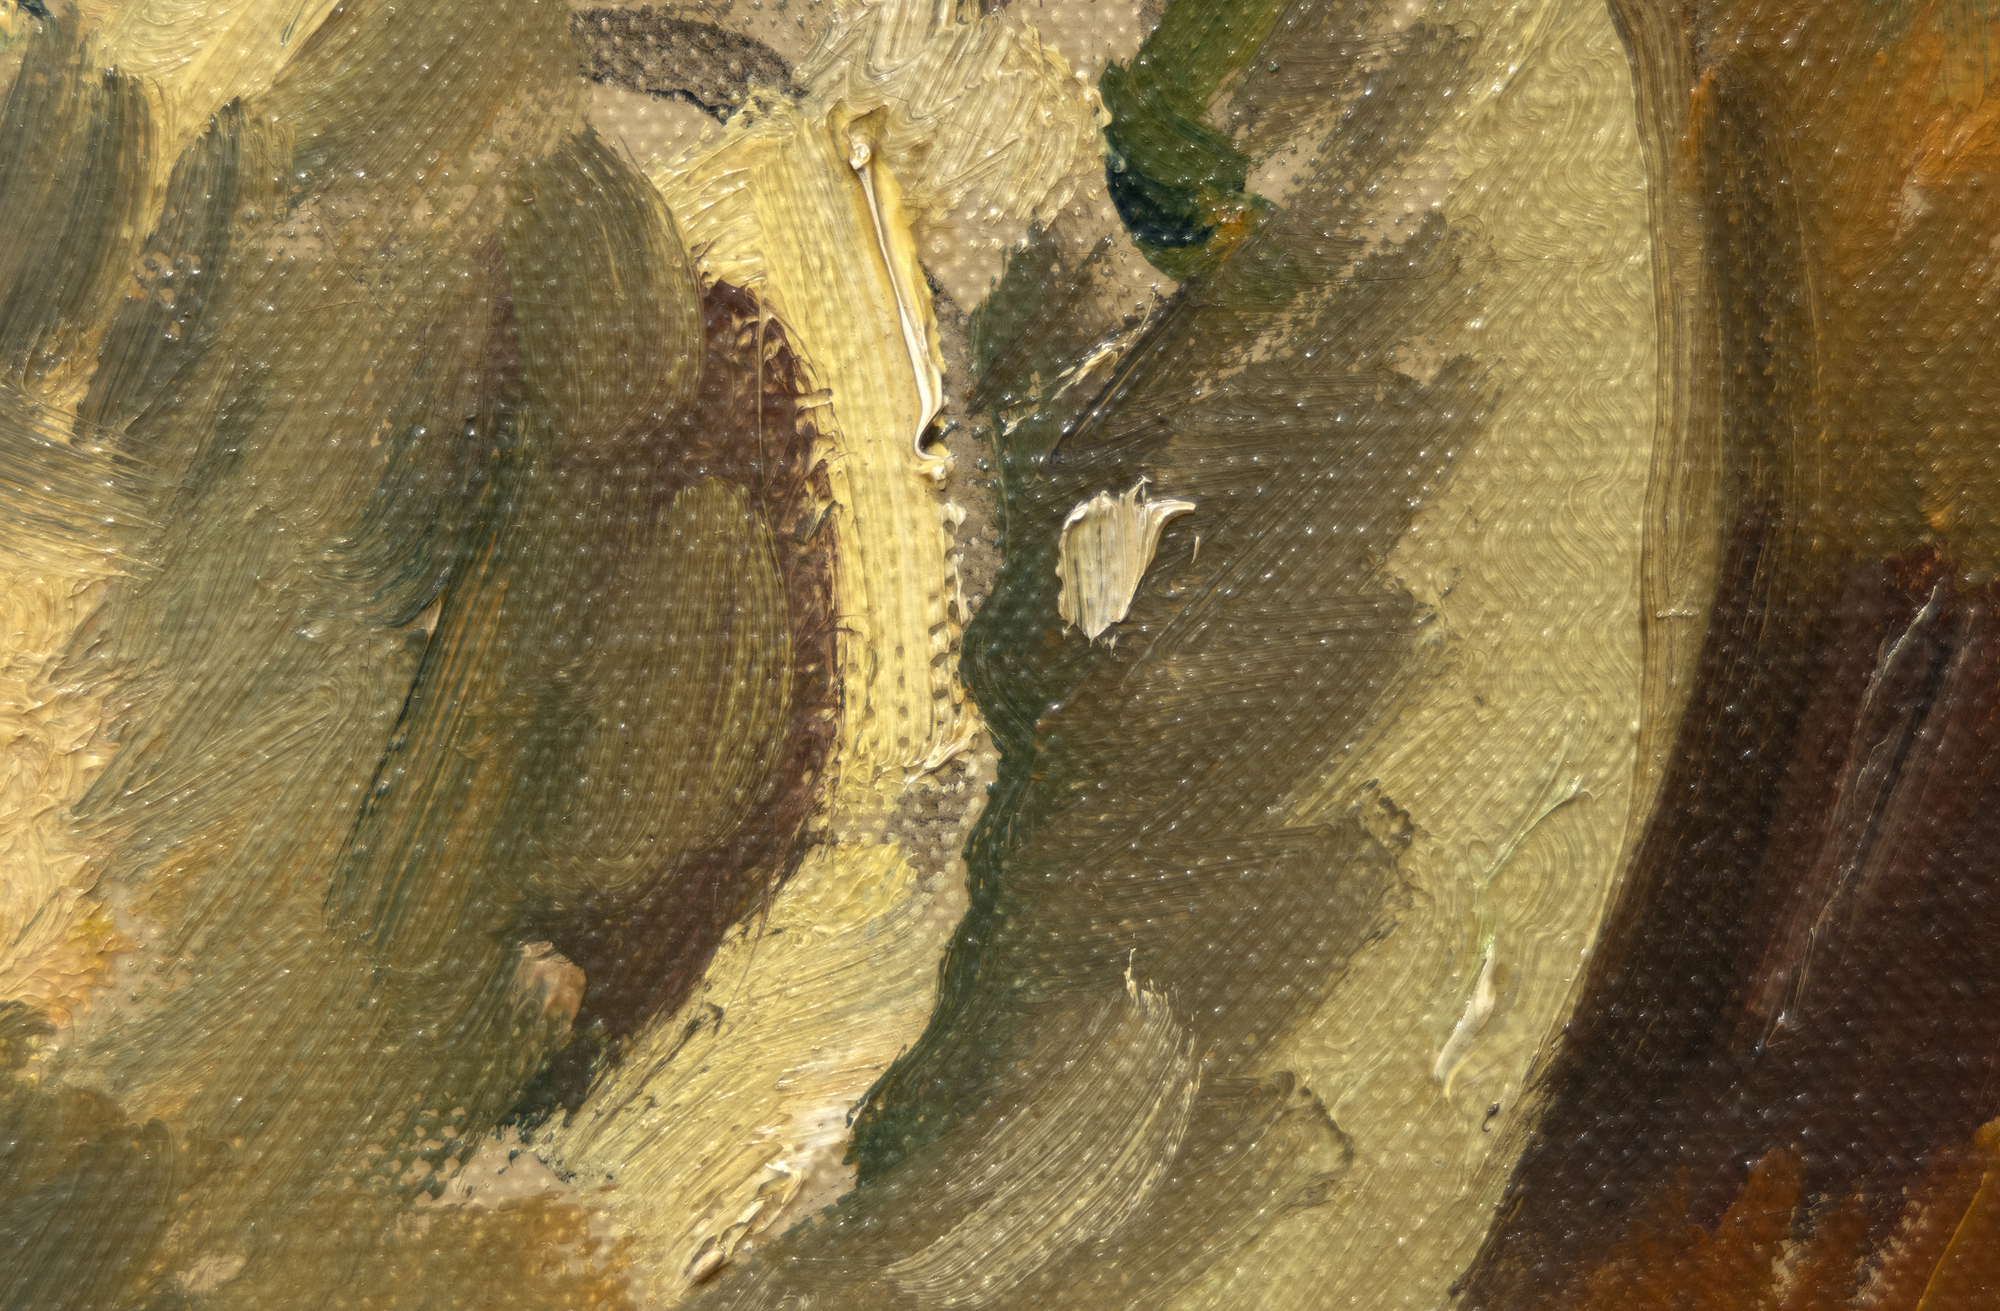 路易-瓦塔特-鹅膏花瓶-布面油画-23 1/2 x 19 英寸。